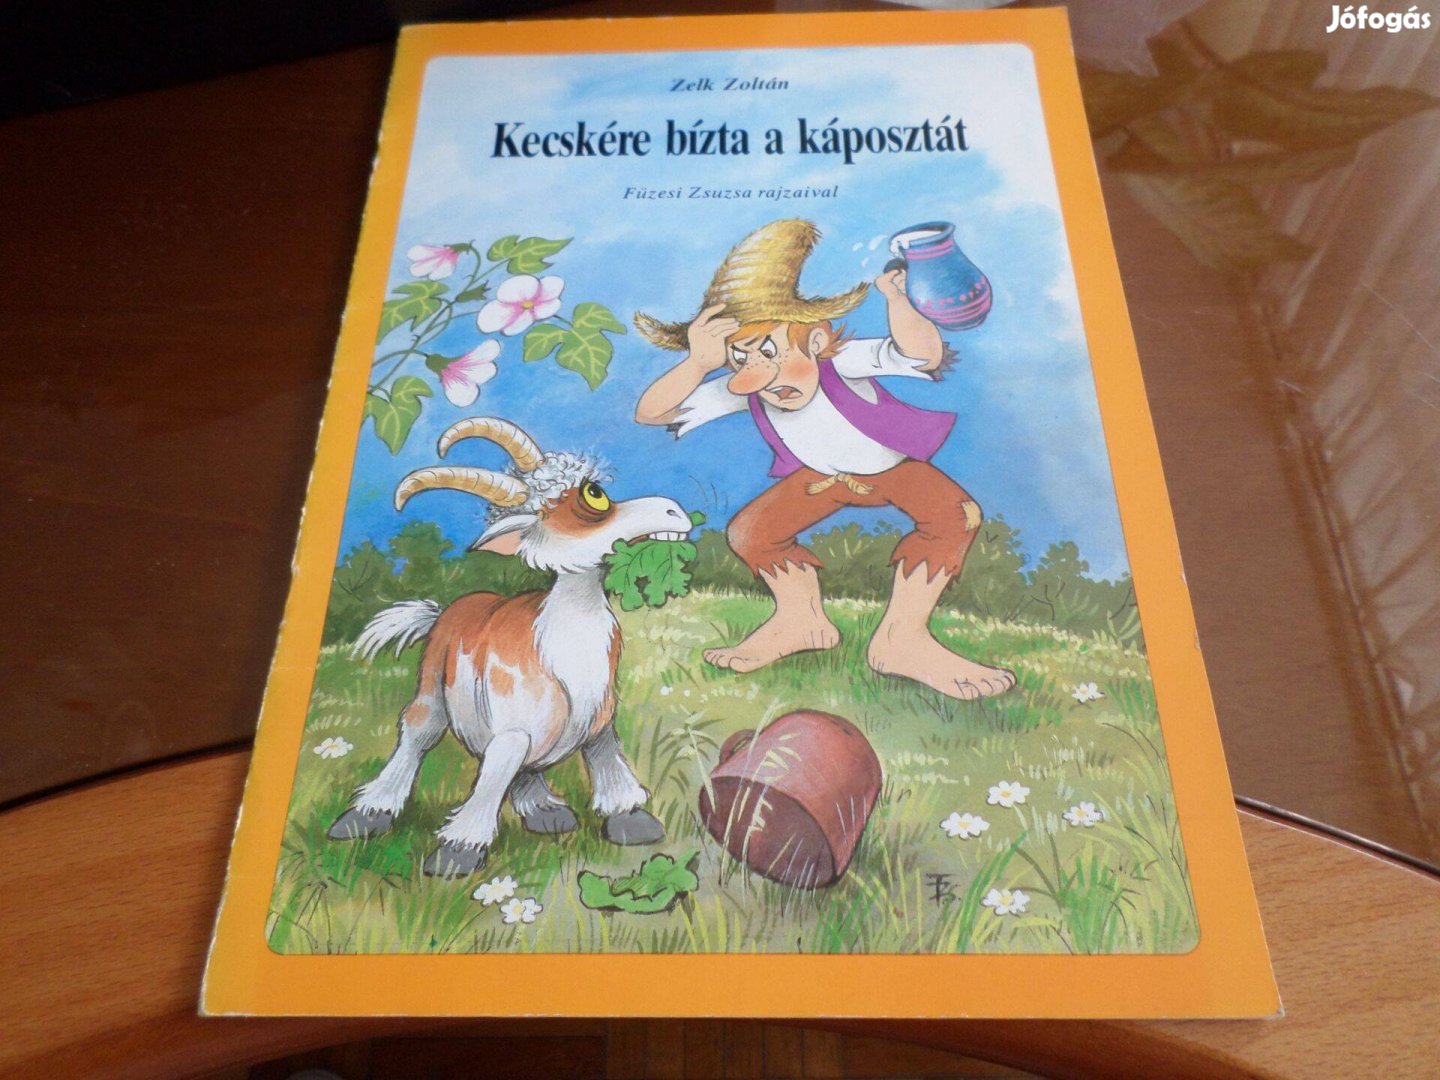 Zelk Zoltán Kecskére bízta a káposztát Füzesi Zsuzsa rajz gyermekkönyv